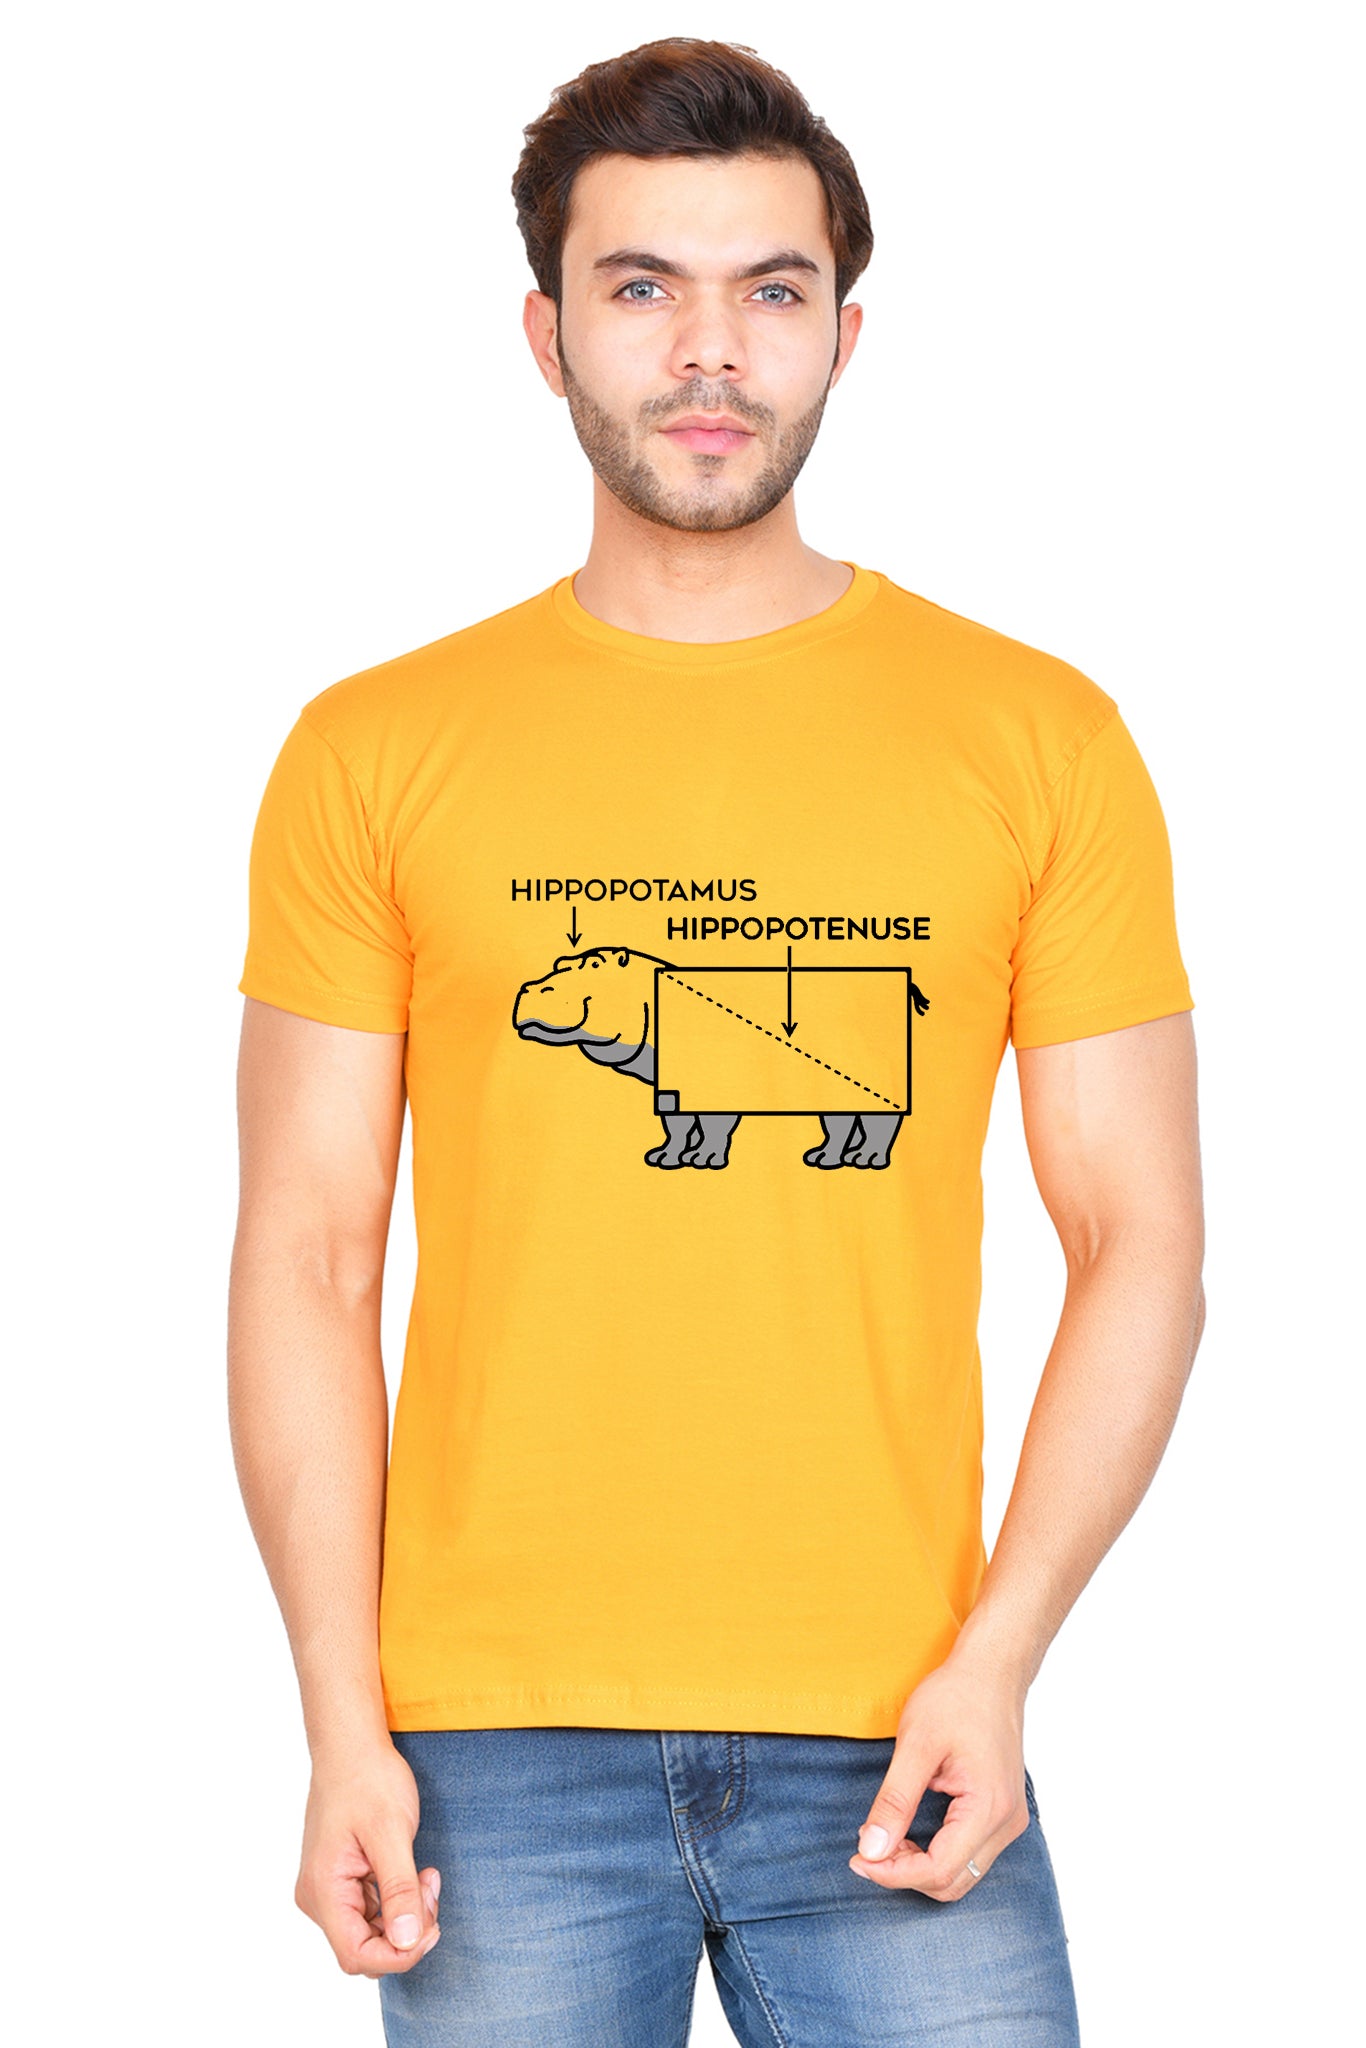 Hippopotamus-Hippopotenuse (M) - Mustard Yellow